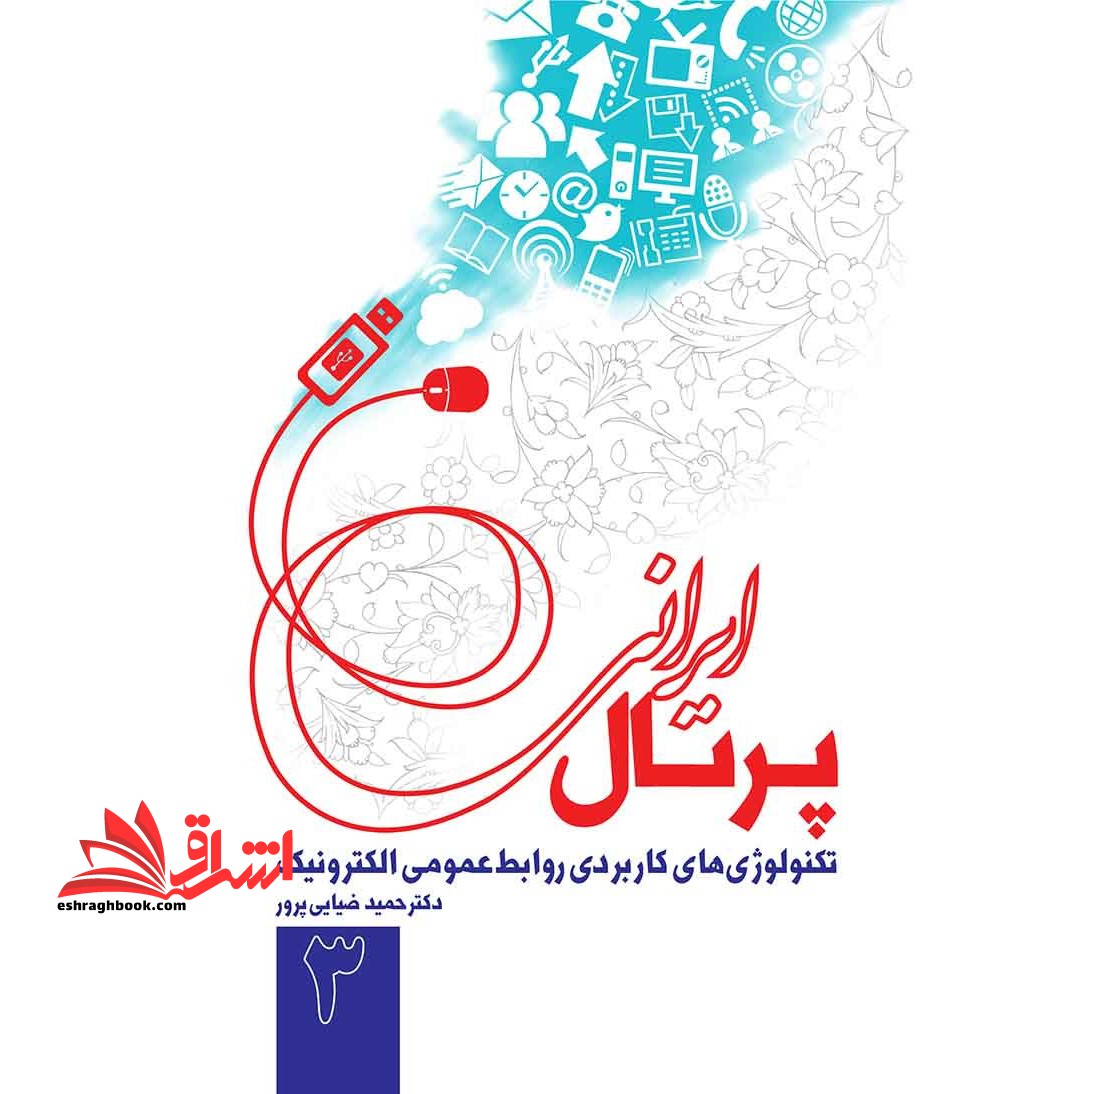 تکنولوژی های کاربردی روابط عمومی الکترونیک ۳: پرتال ایرانی